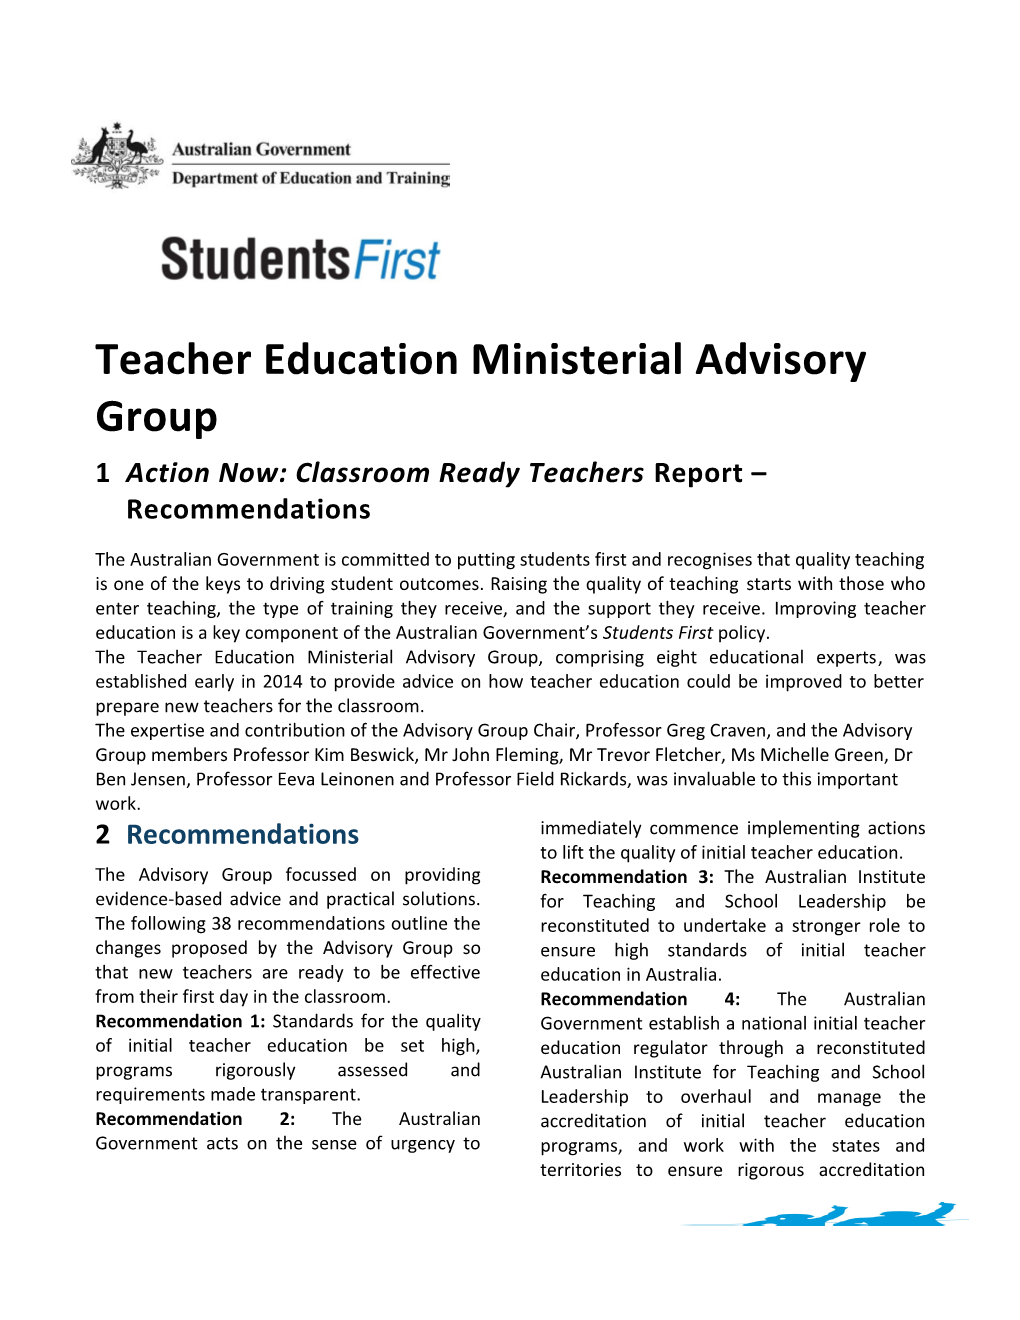 Teacher Education Ministerial Advisory Group